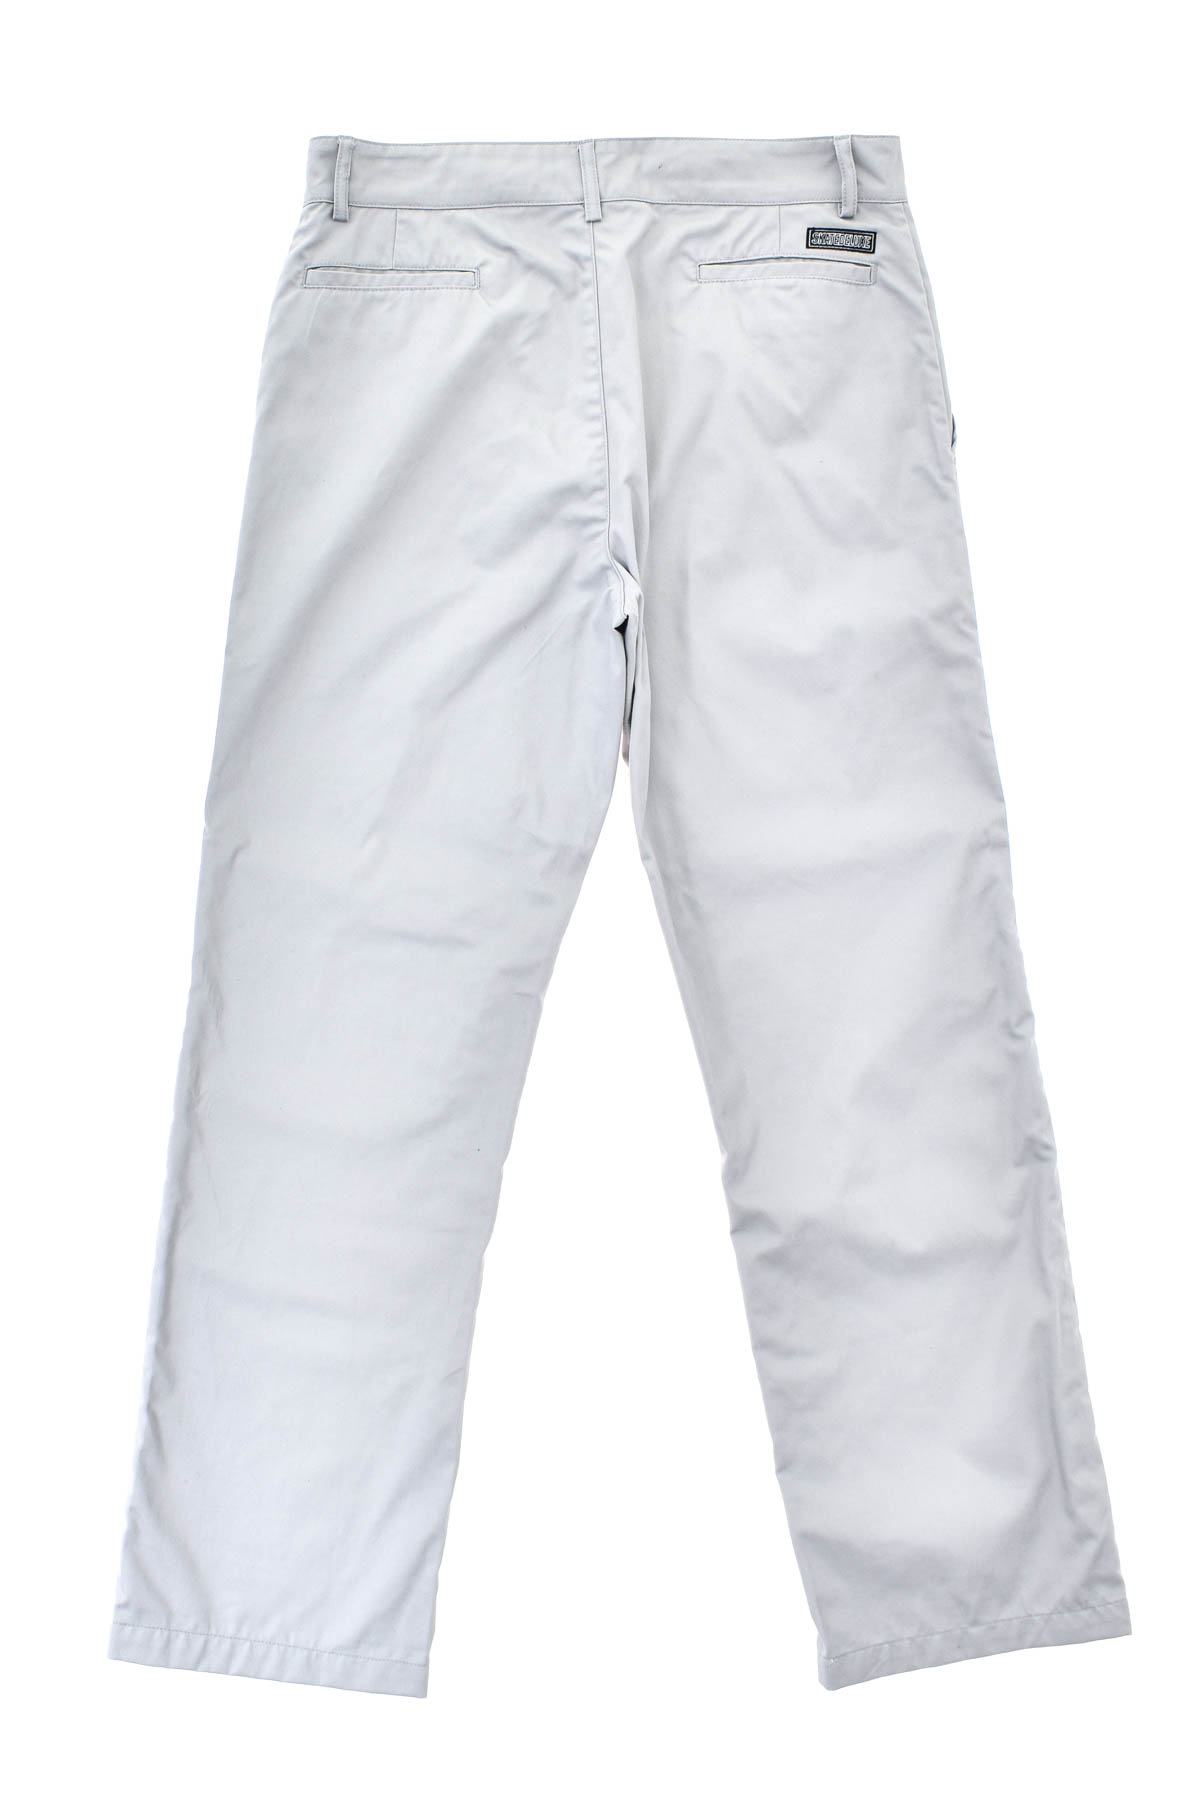 Pantalon pentru bărbați - SKATEDELUXE - 1